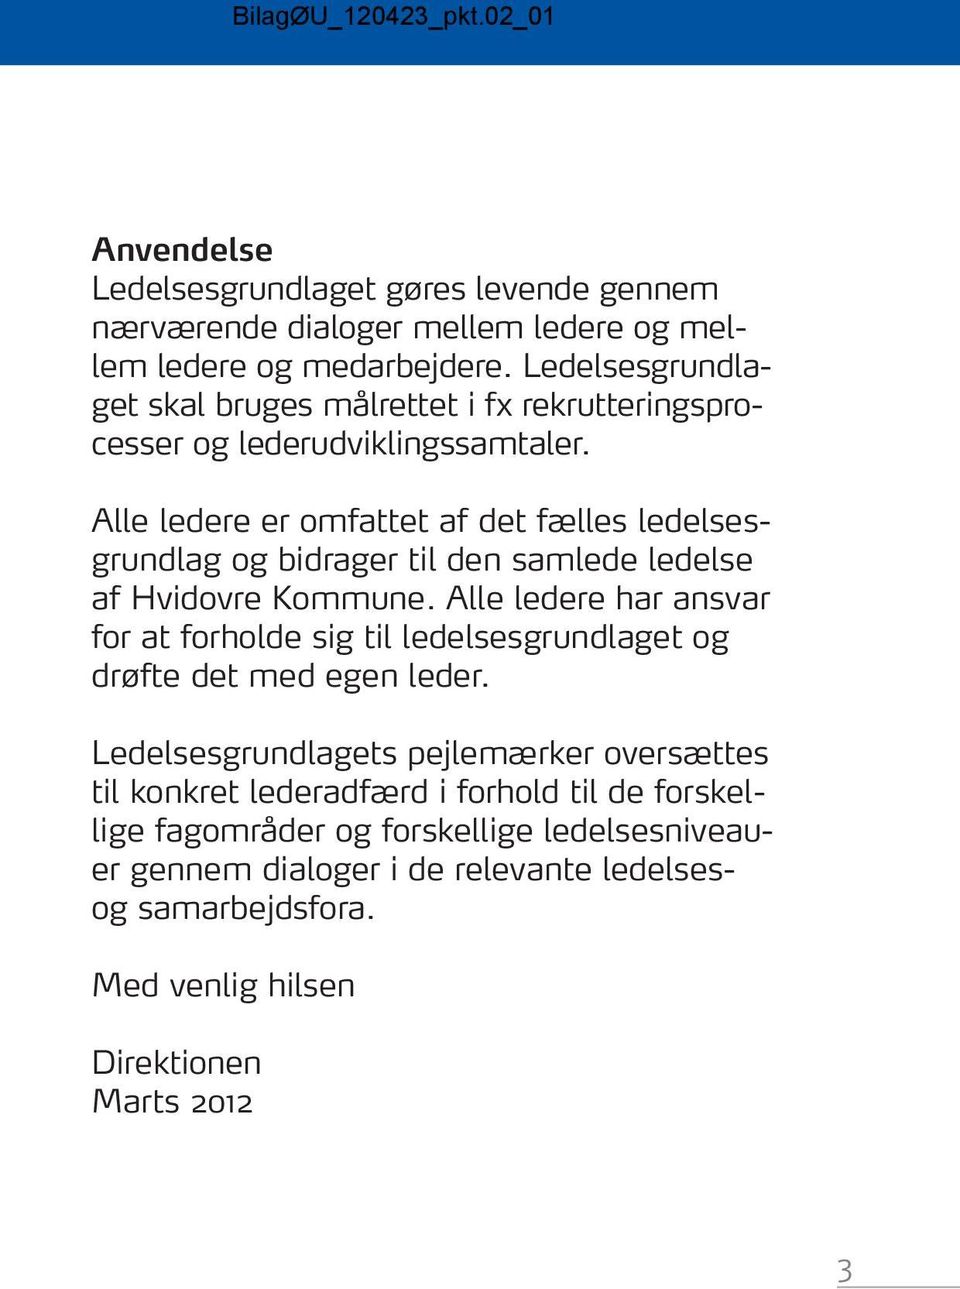 Alle ledere er omfattet af det fælles ledelsesgrundlag og bidrager til den samlede ledelse af Hvidovre Kommune.